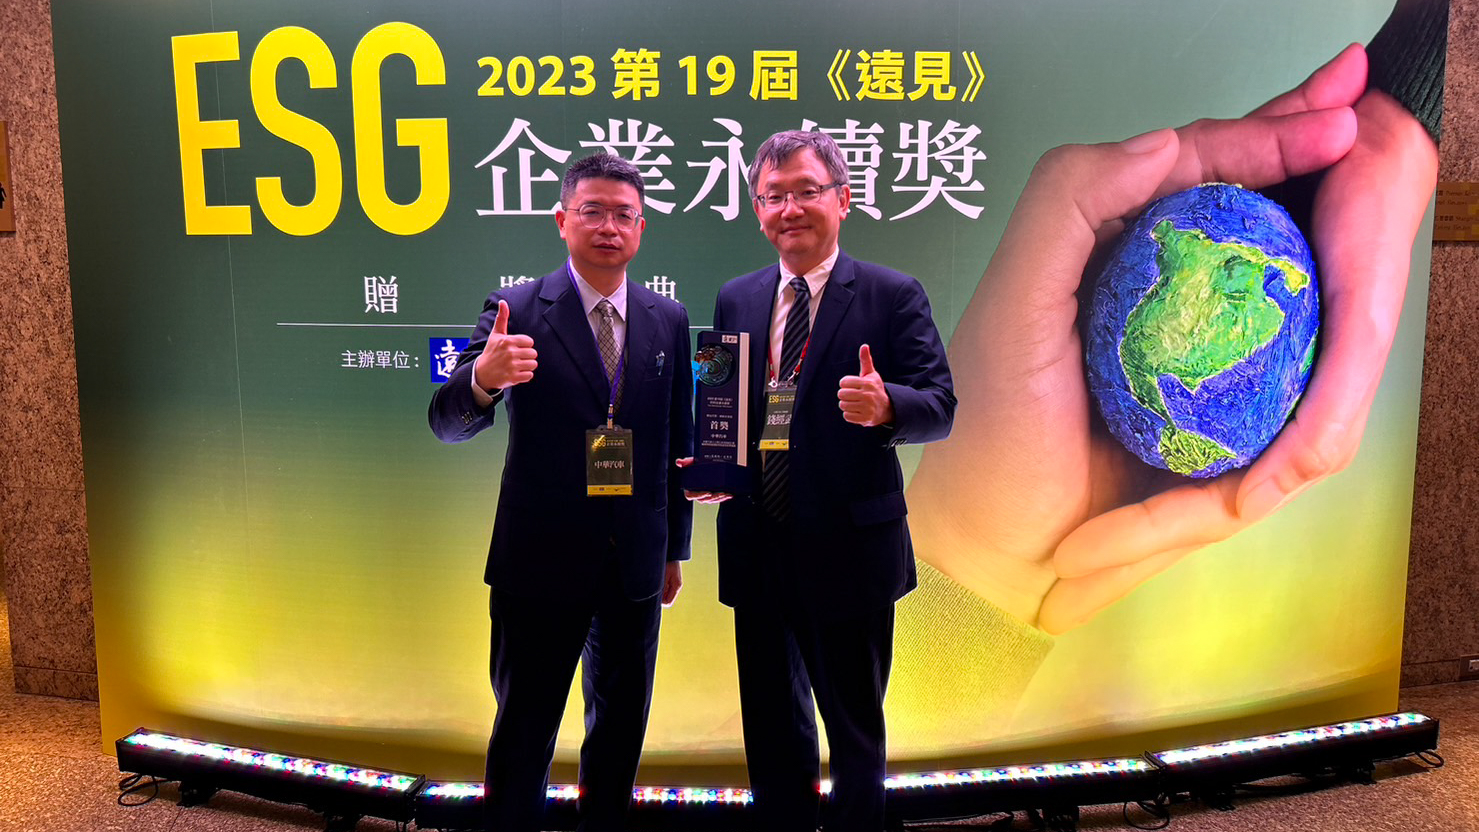 中華汽車獲 23 年「遠見雜誌 ESG 企業永續獎」樂齡友善組 首獎